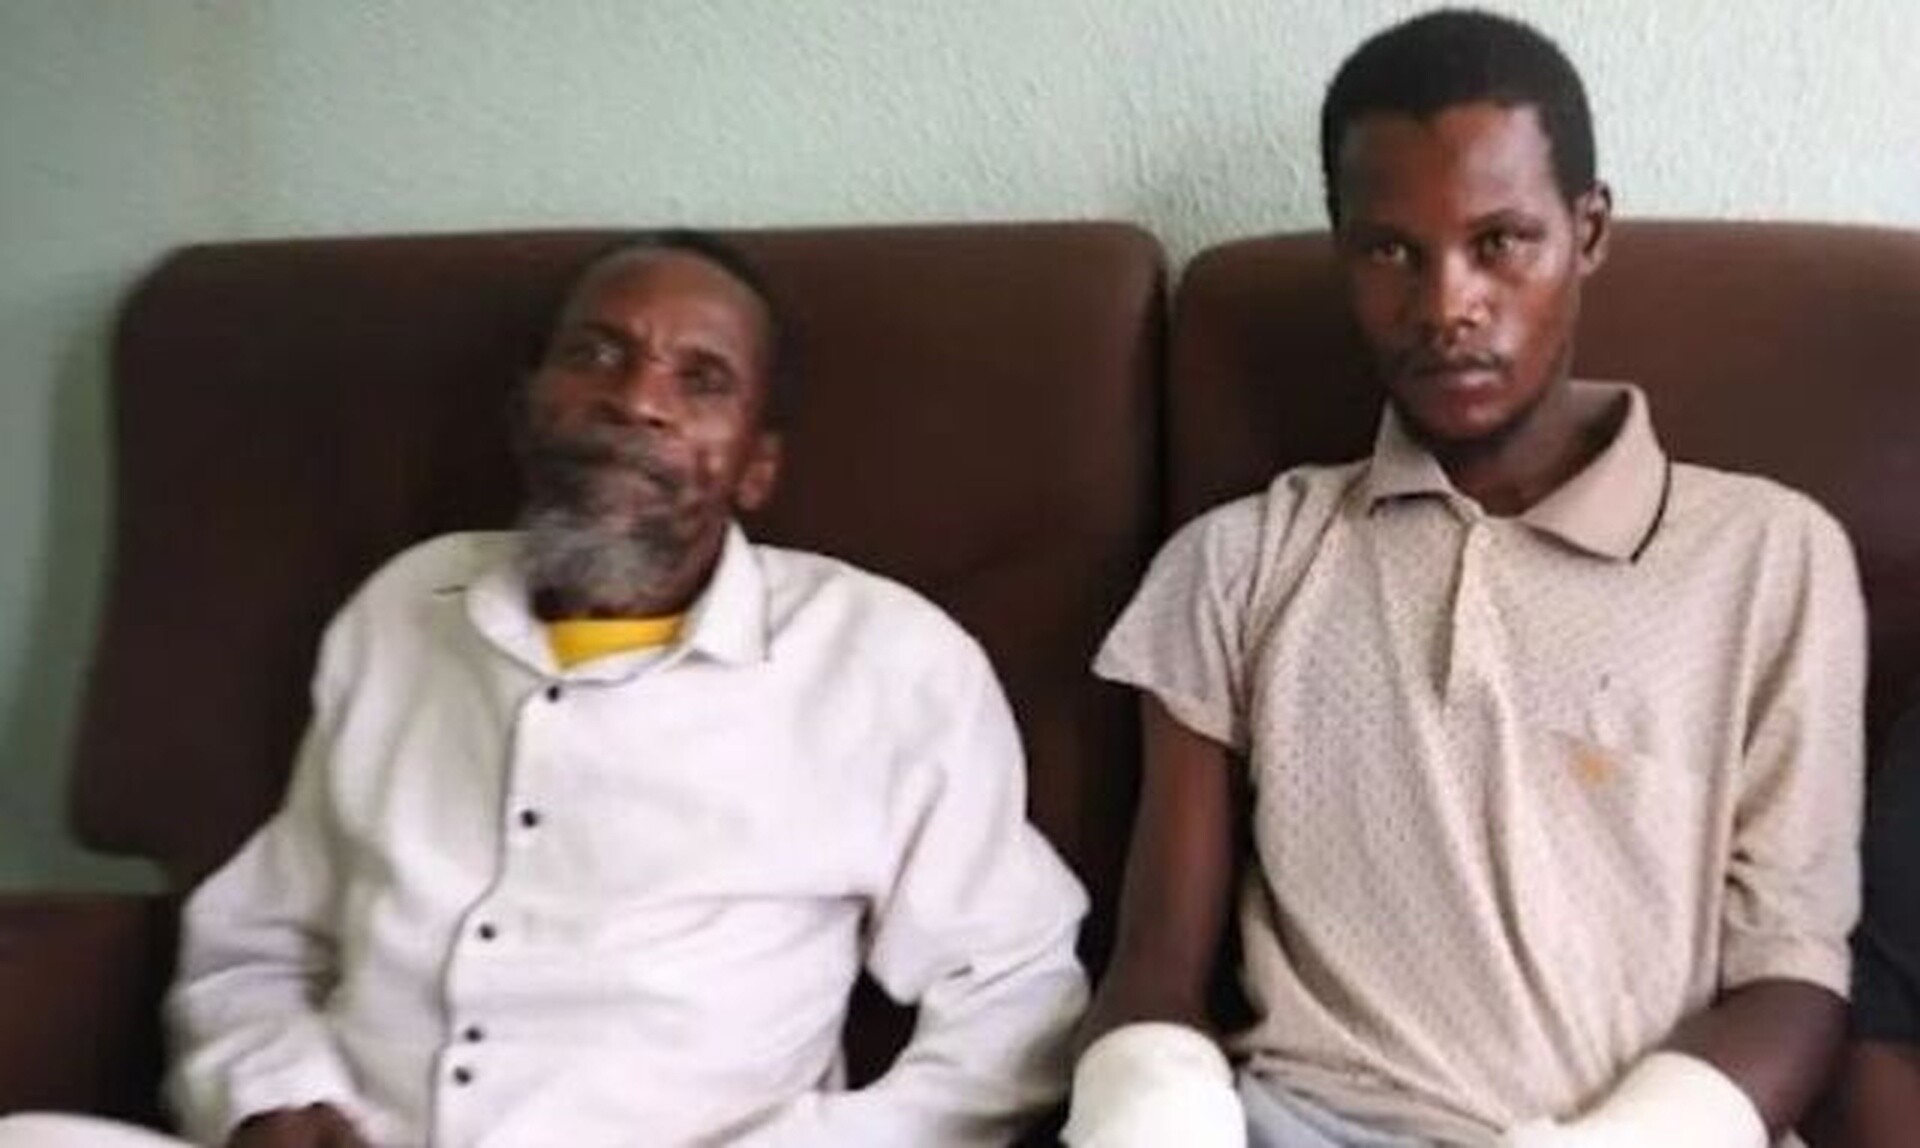 Νότια Αφρική: Πάστορας έκοψε τα χέρια νεαρού - Τον έπιασε να κλέβει από την εκκλησία (pics)